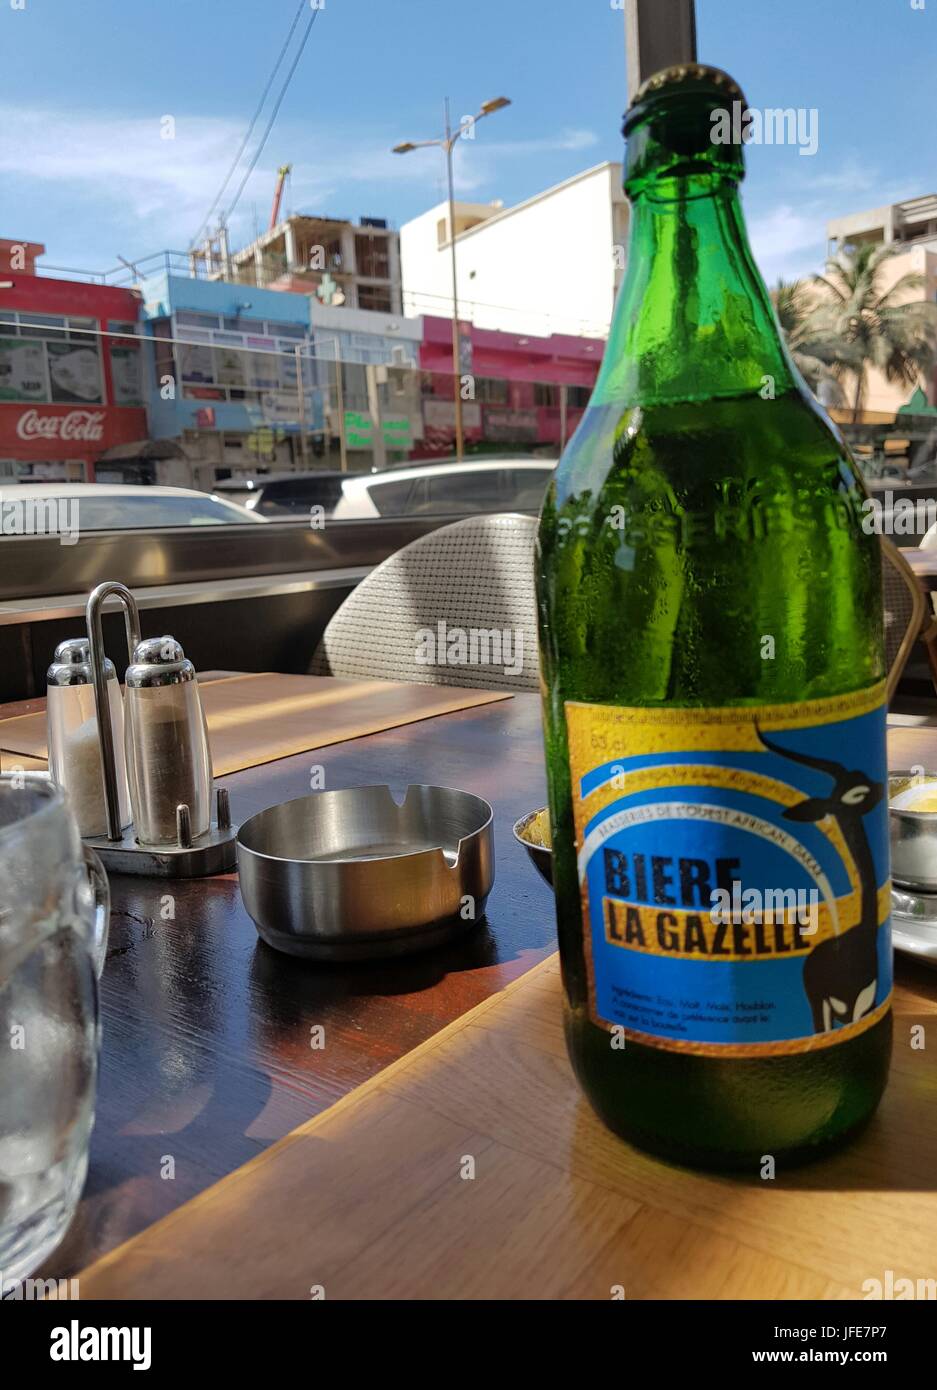 Bouteille de biere la Gazelle, bière sénégalaise Banque D'Images